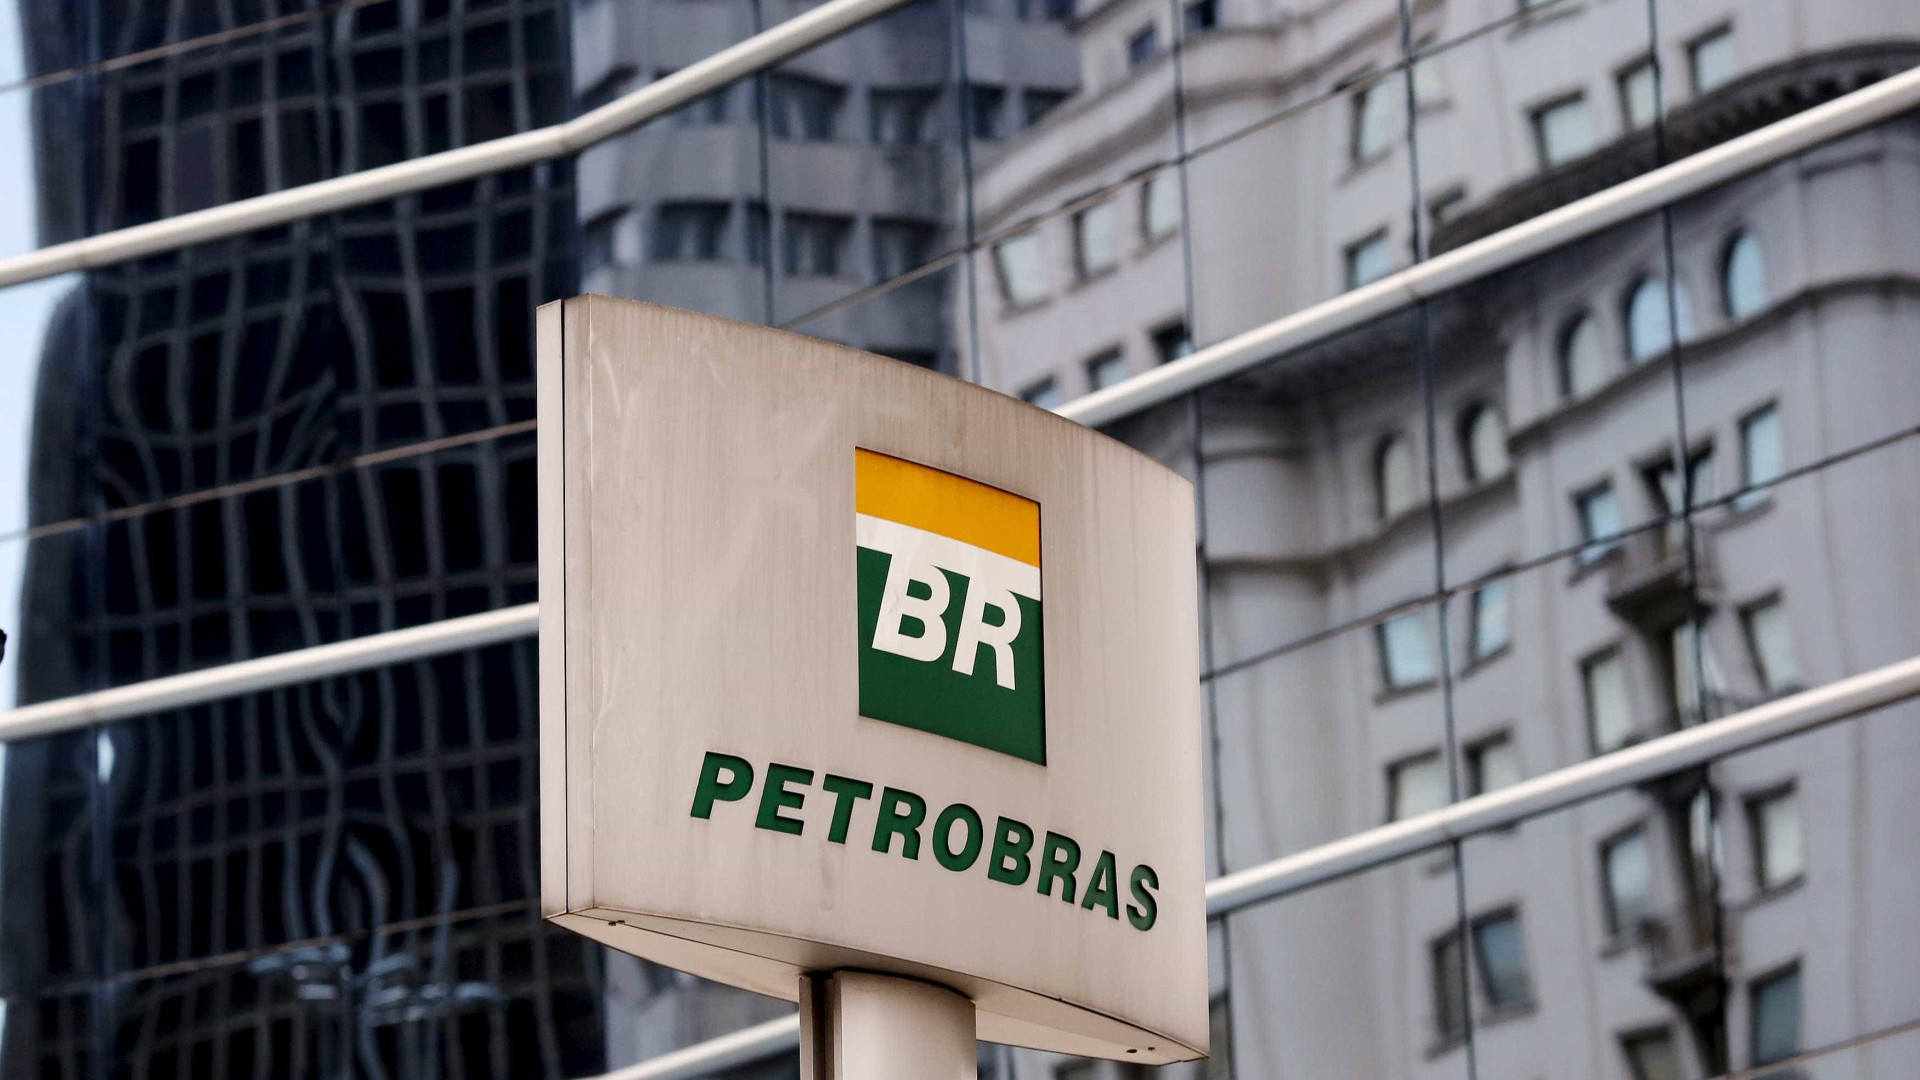 Questões de segurança adiam retomada da maior refinaria da Petrobras